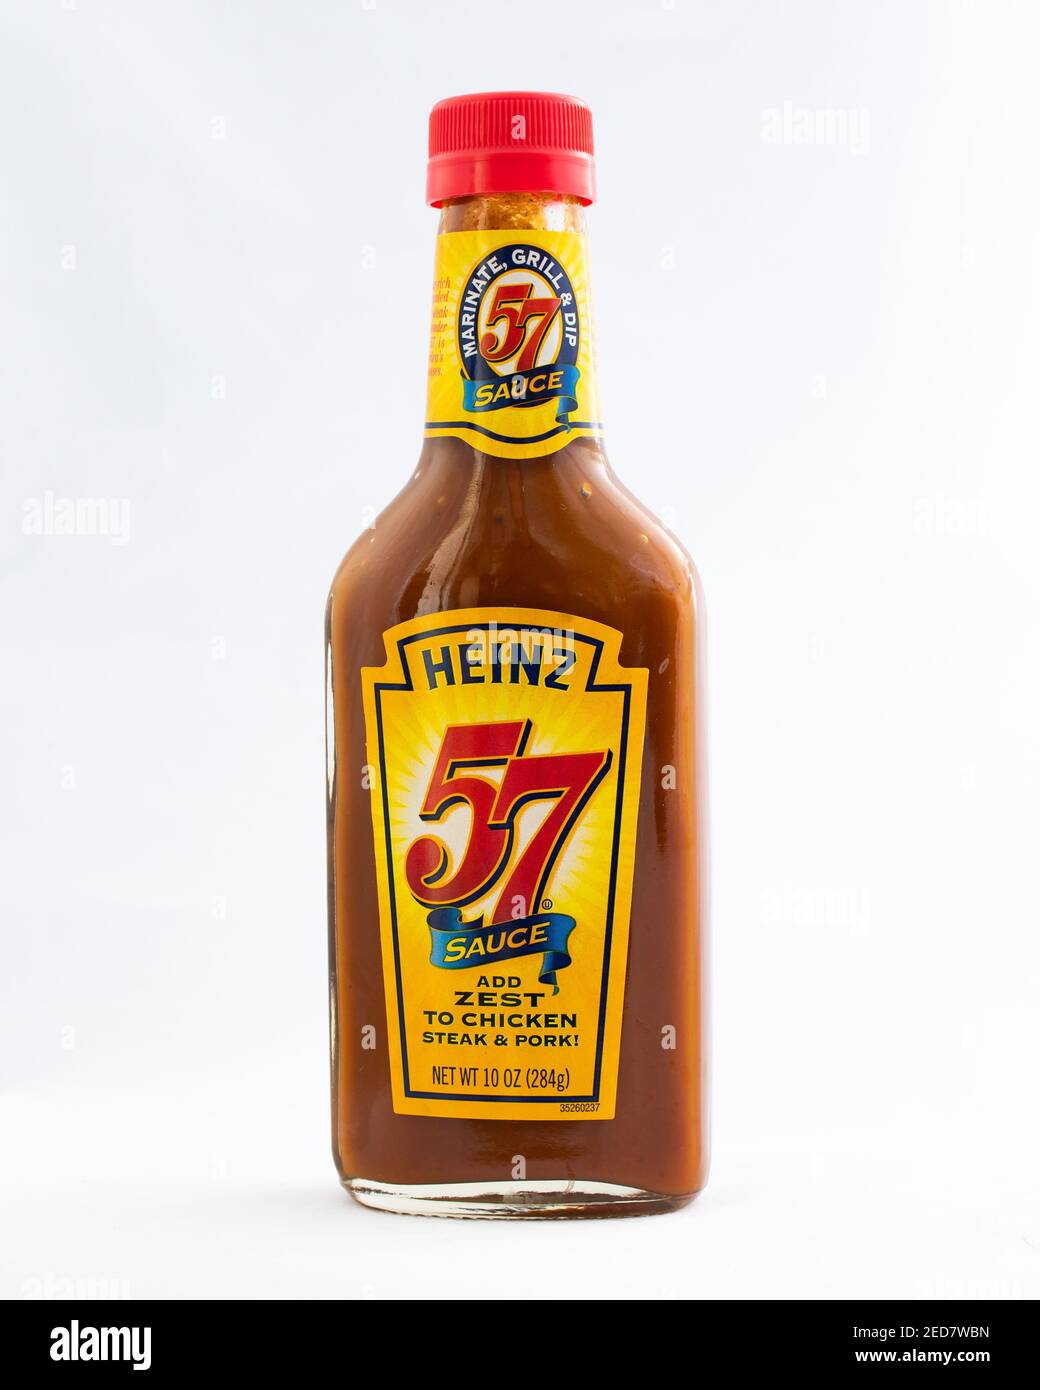 Una botella de salsa Heinz 57 para añadir zest a pollo, bistec y cerdo aislado en blanco. Foto de stock